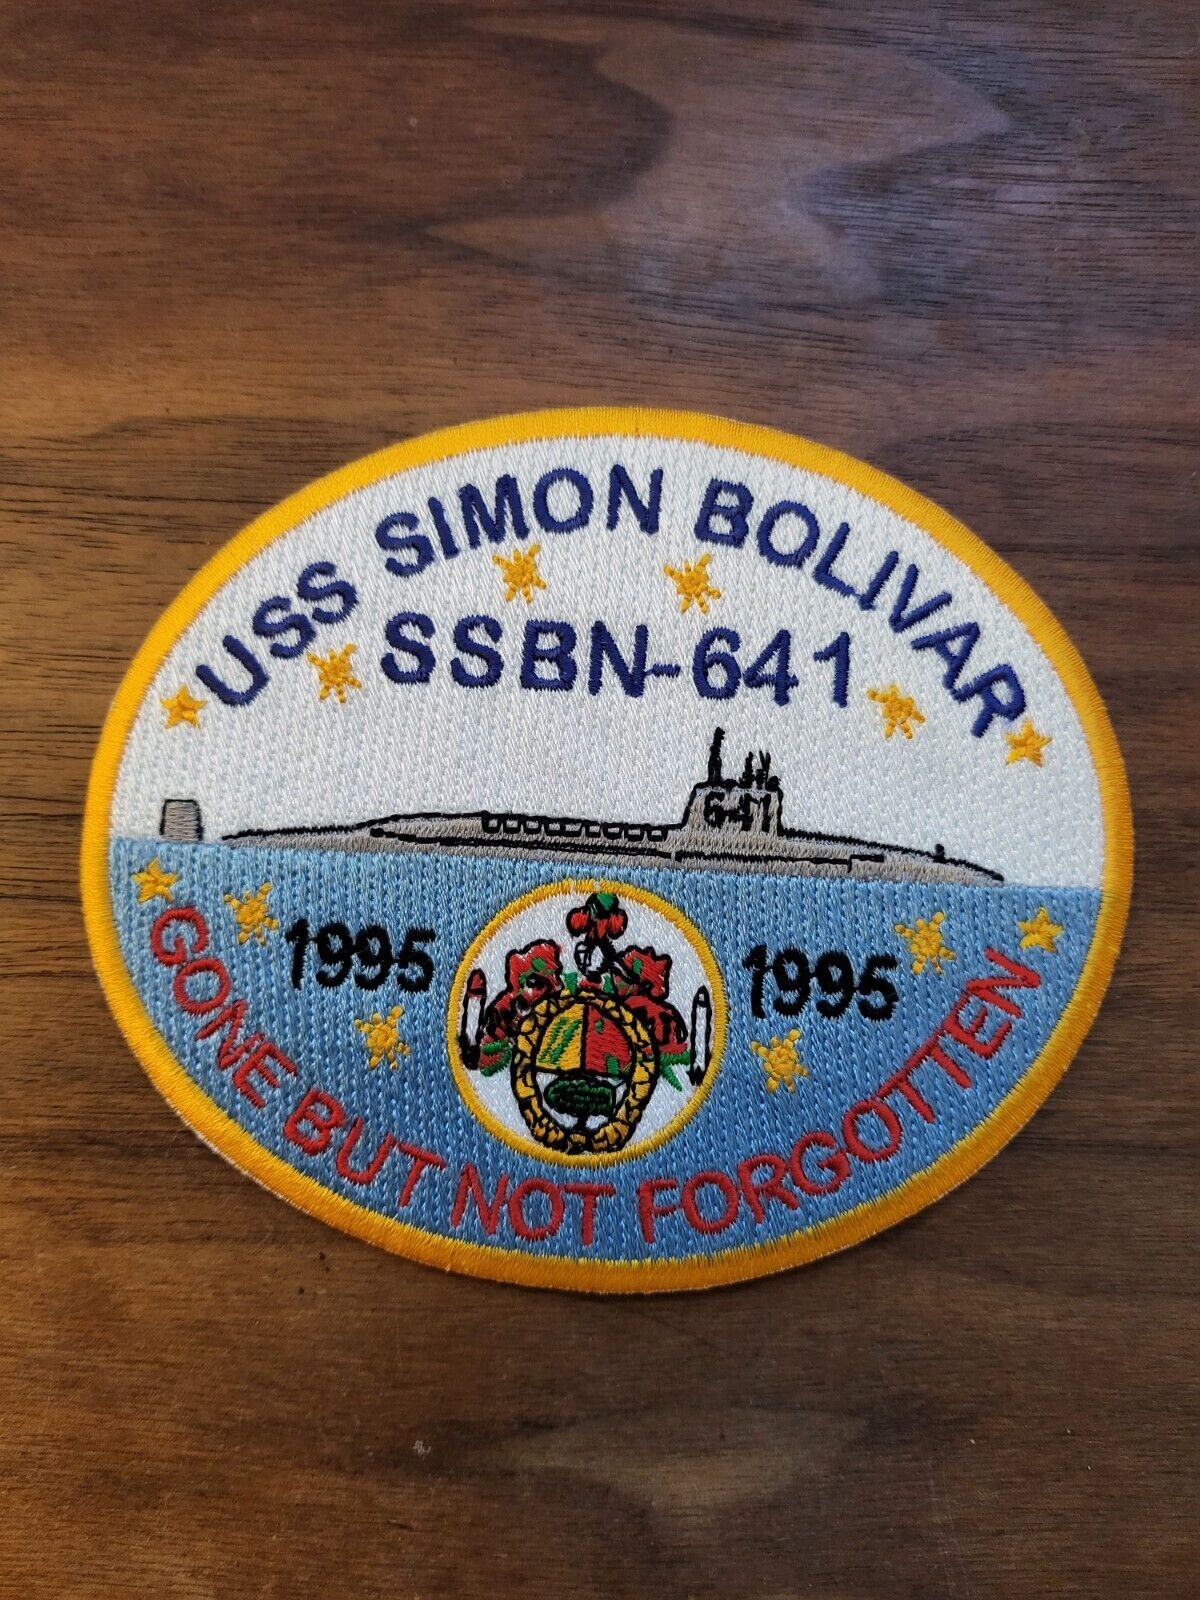 USS SIMON BOLIVAR, SSBN-641, GONE BUT NOT FORGOTTEN